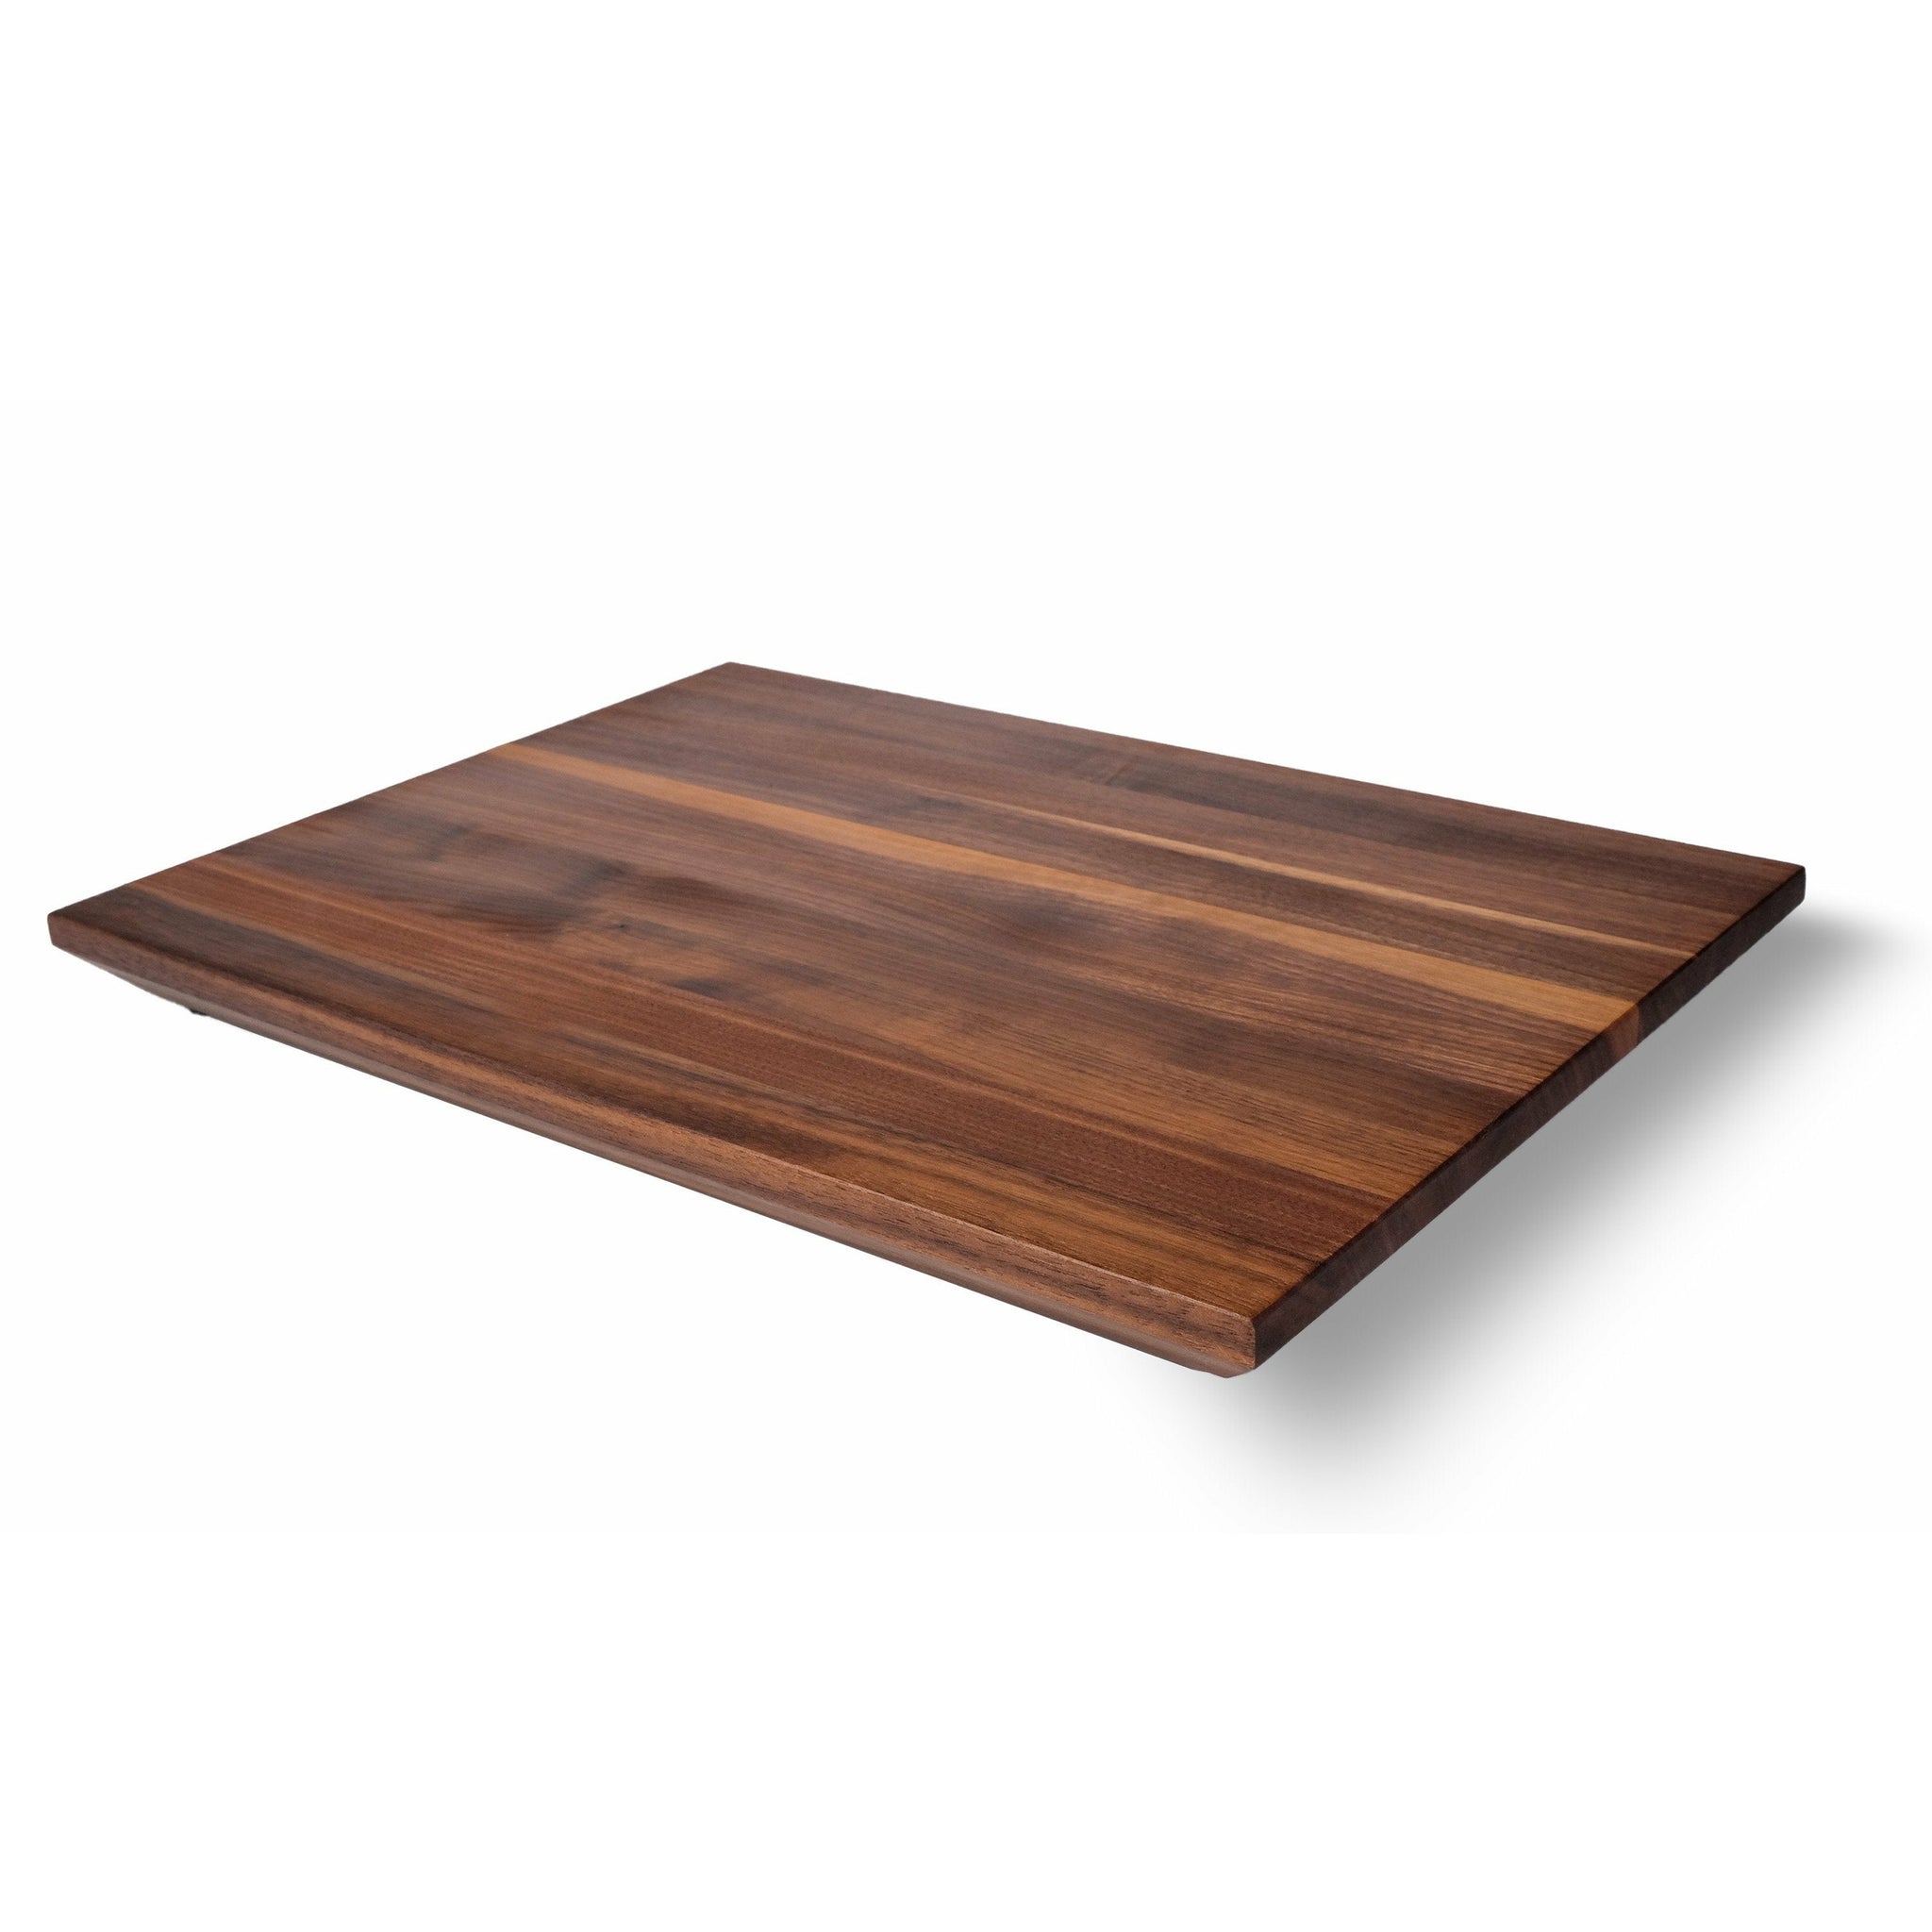 https://steelmadeusa.com/cdn/shop/products/cutting-boards-cutting-board-steelmade-walnut-698852_2048x.jpg?v=1655247197